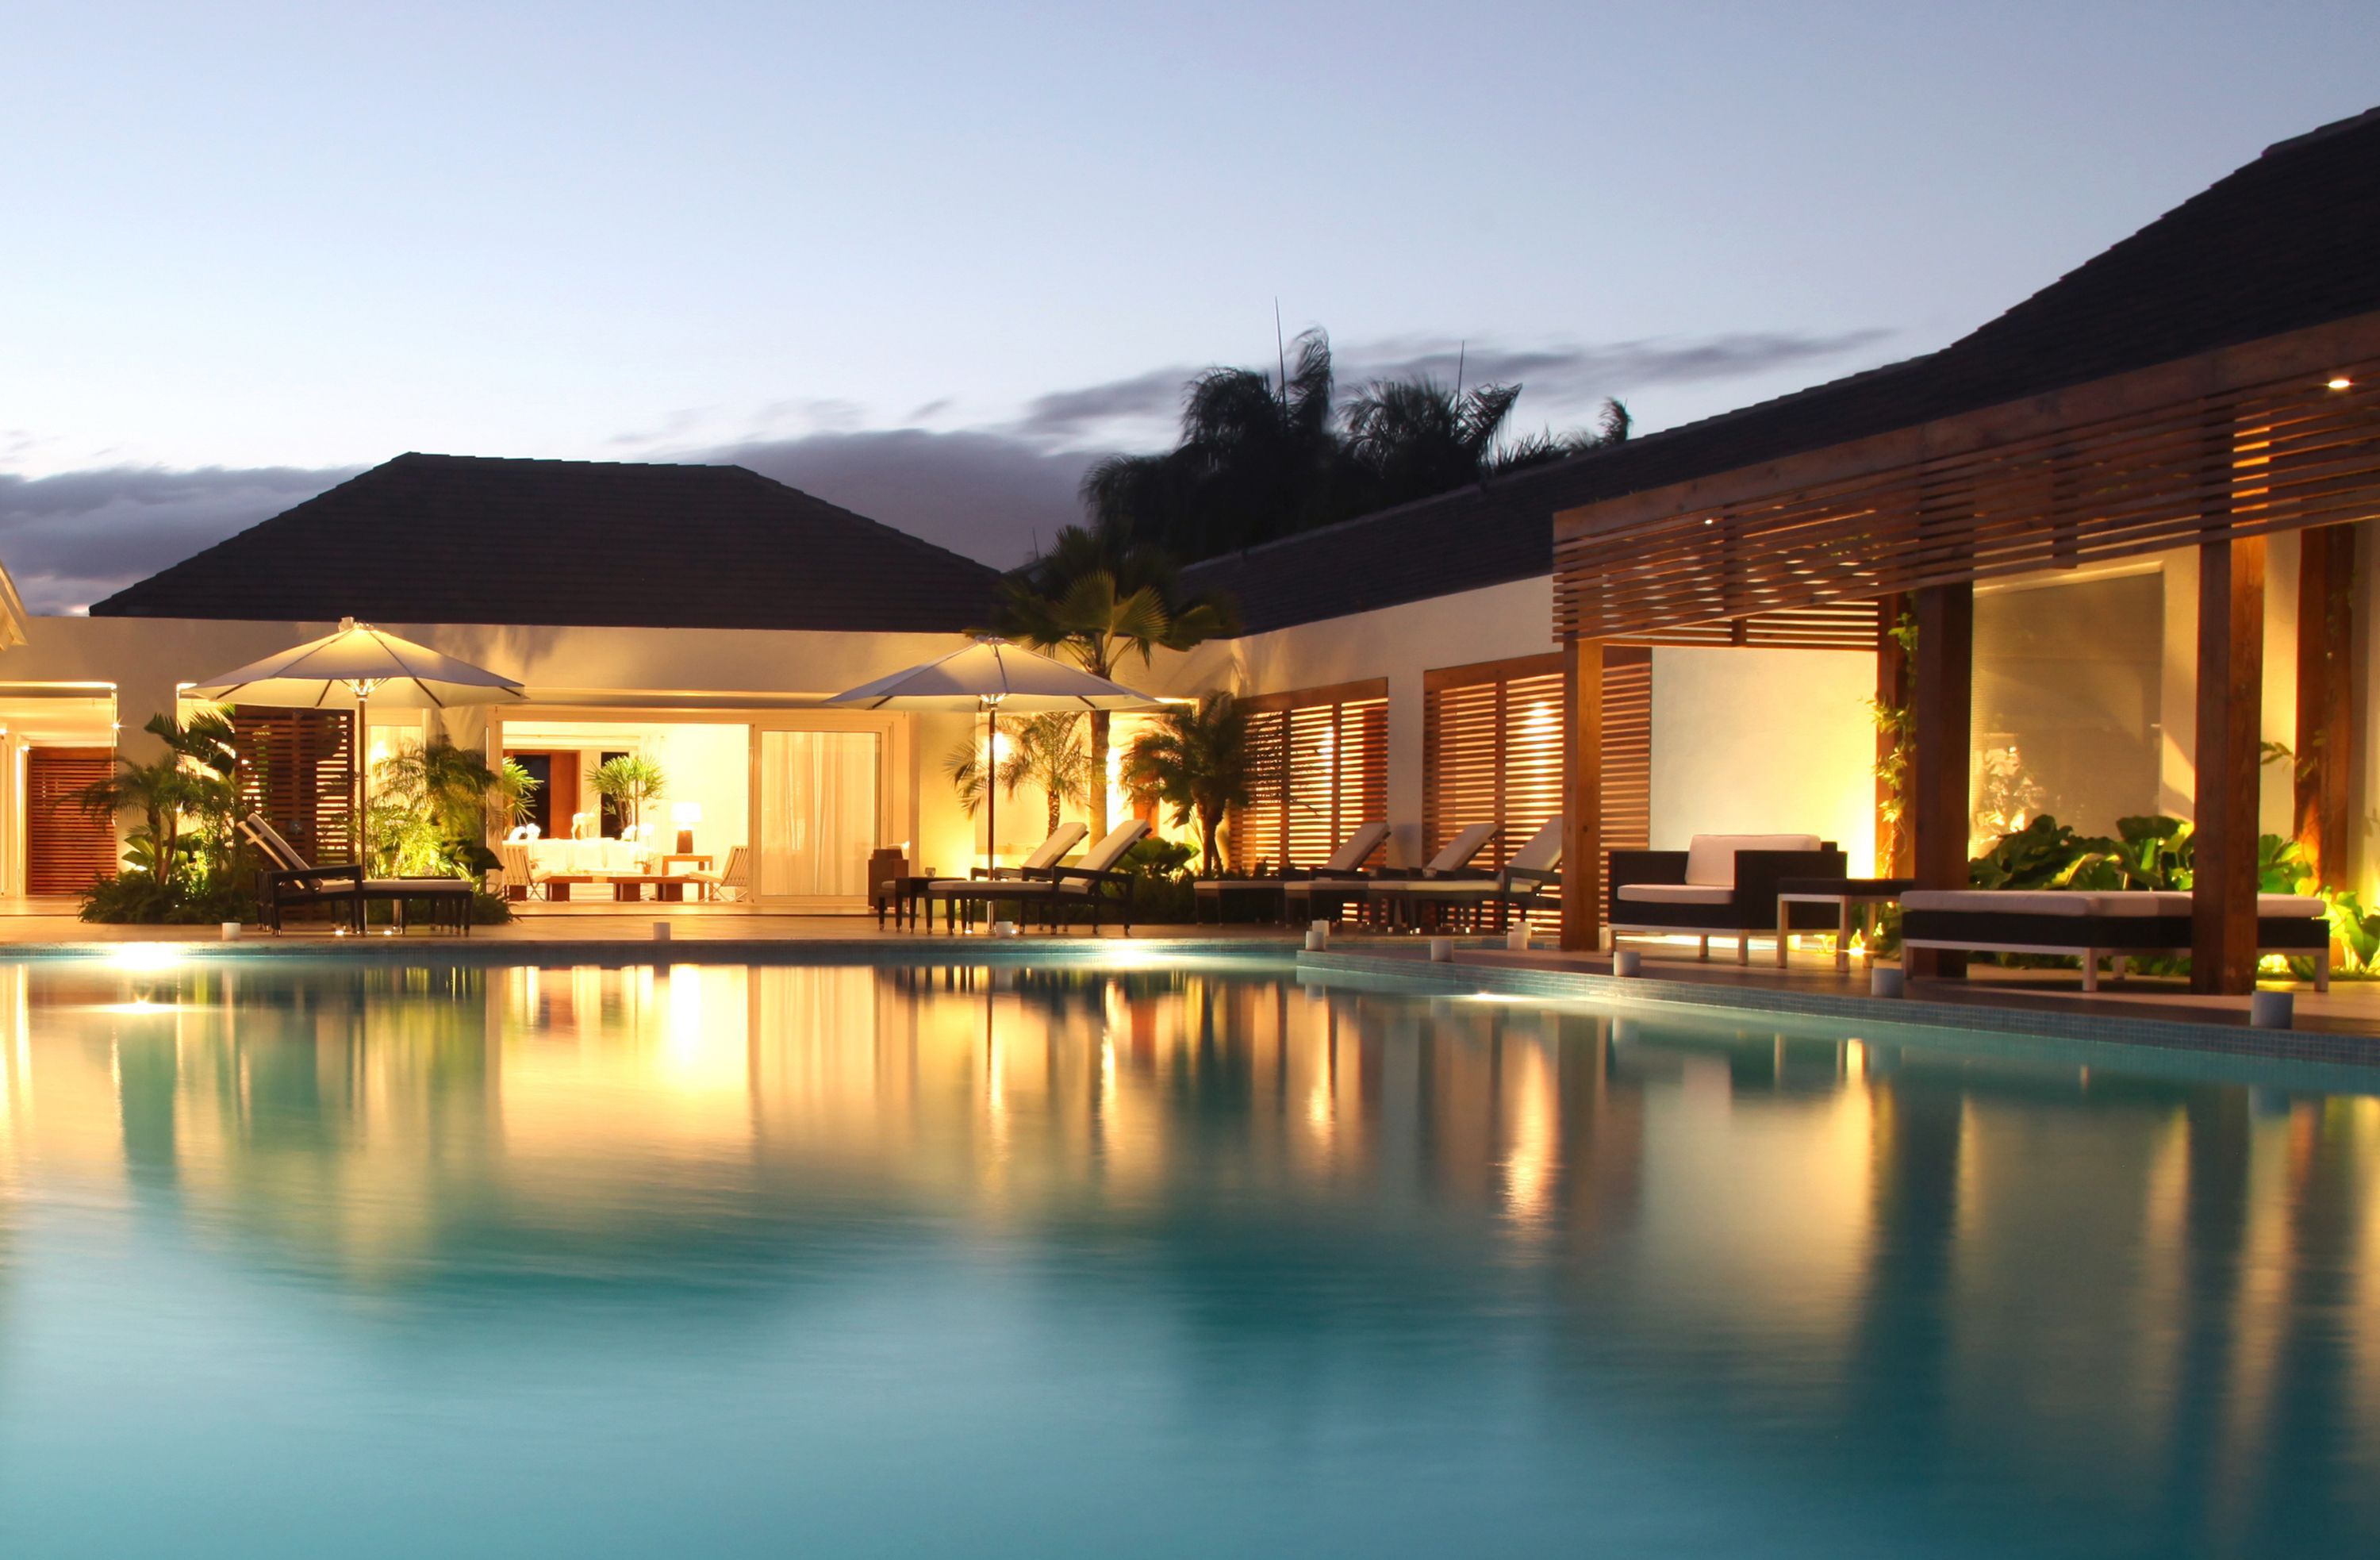 Casa De Campo Resort and Villas' outdoor pool